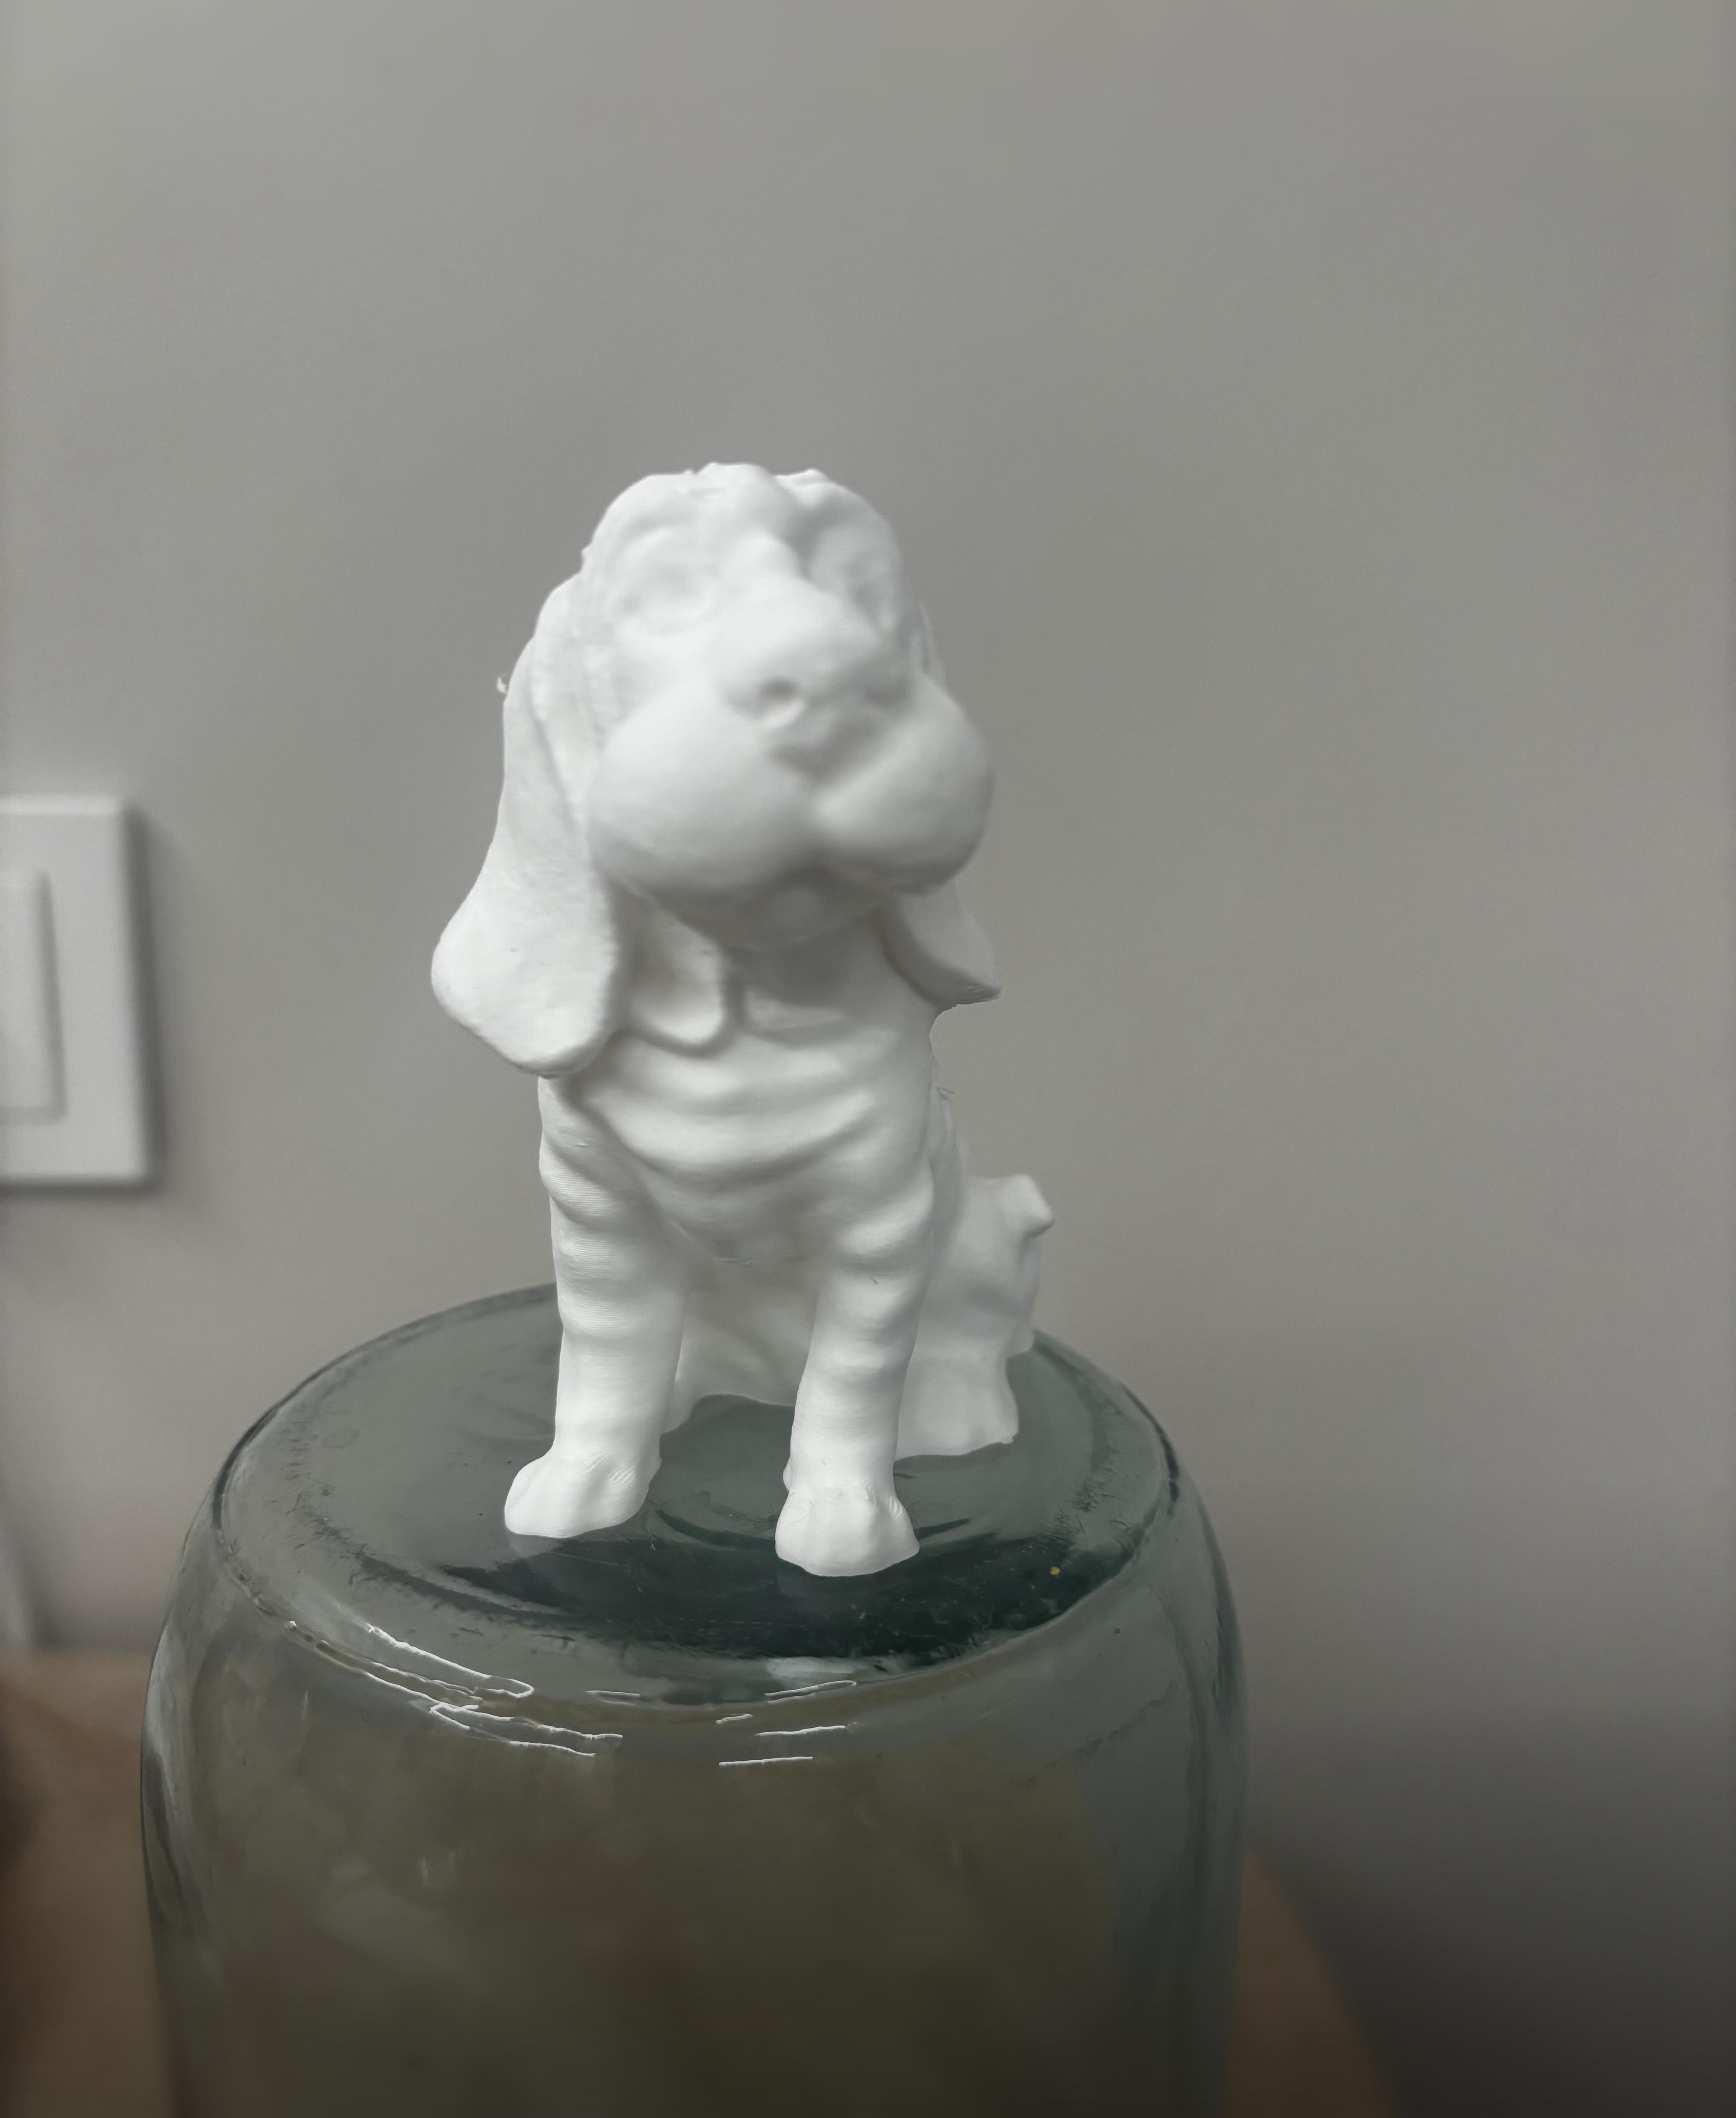 Sculpture of a dog 3d model